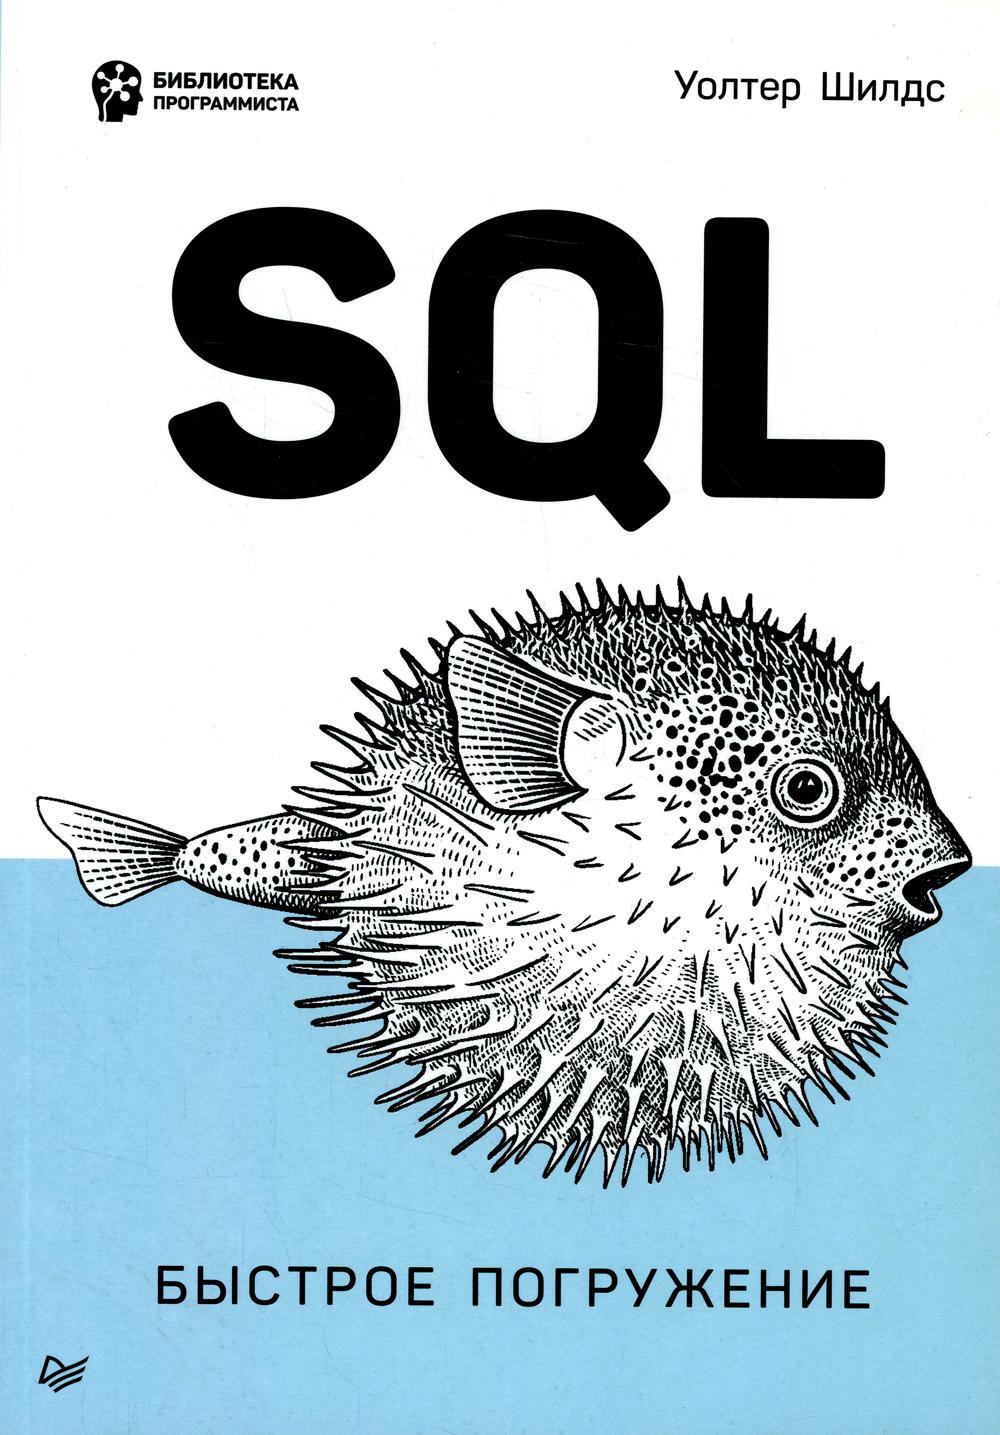 SQL: быстрое погружение